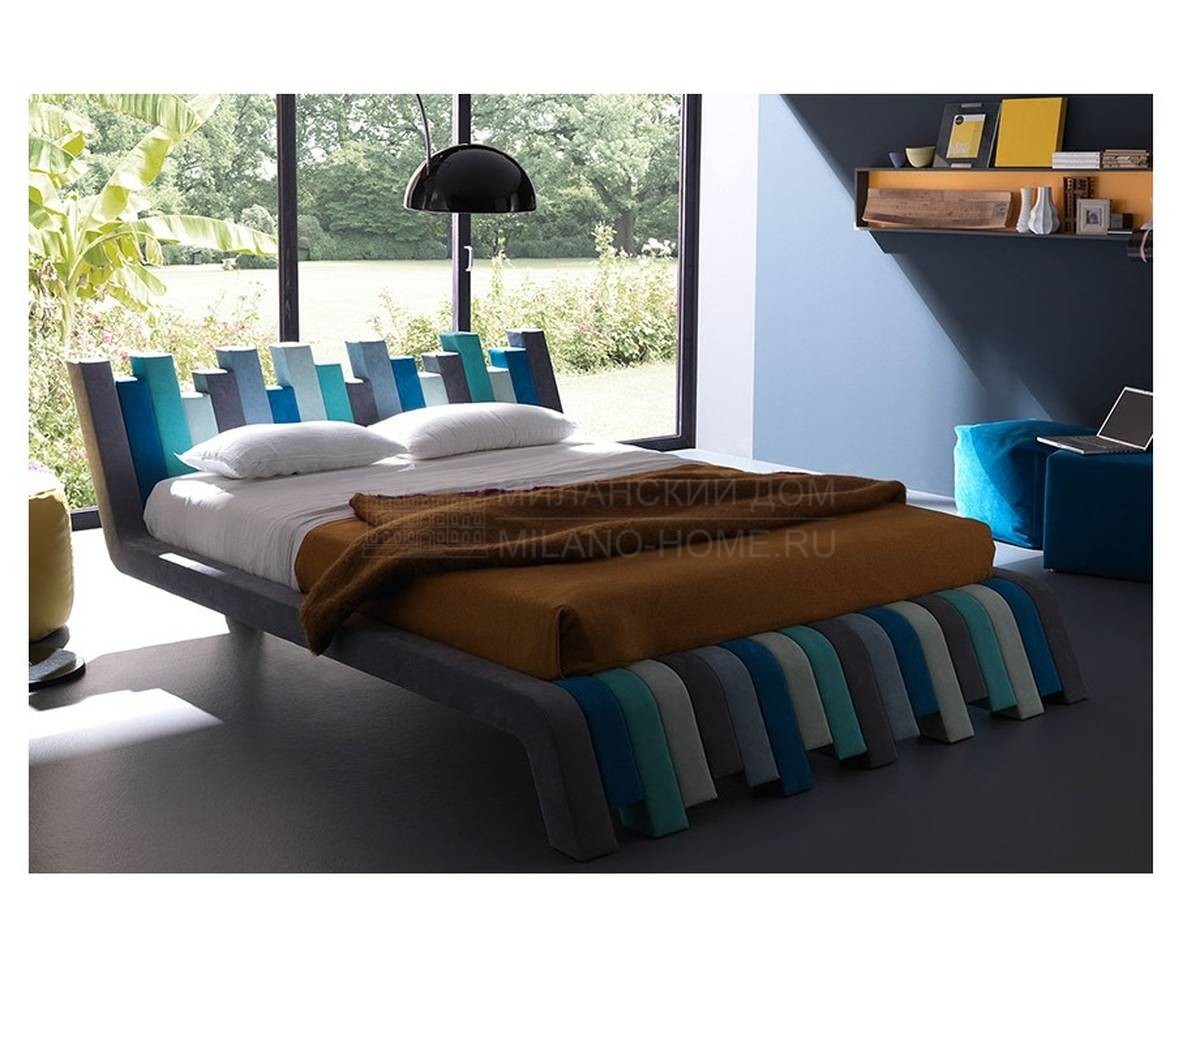 Кровать Cu.Bed из Италии фабрики BOLZAN